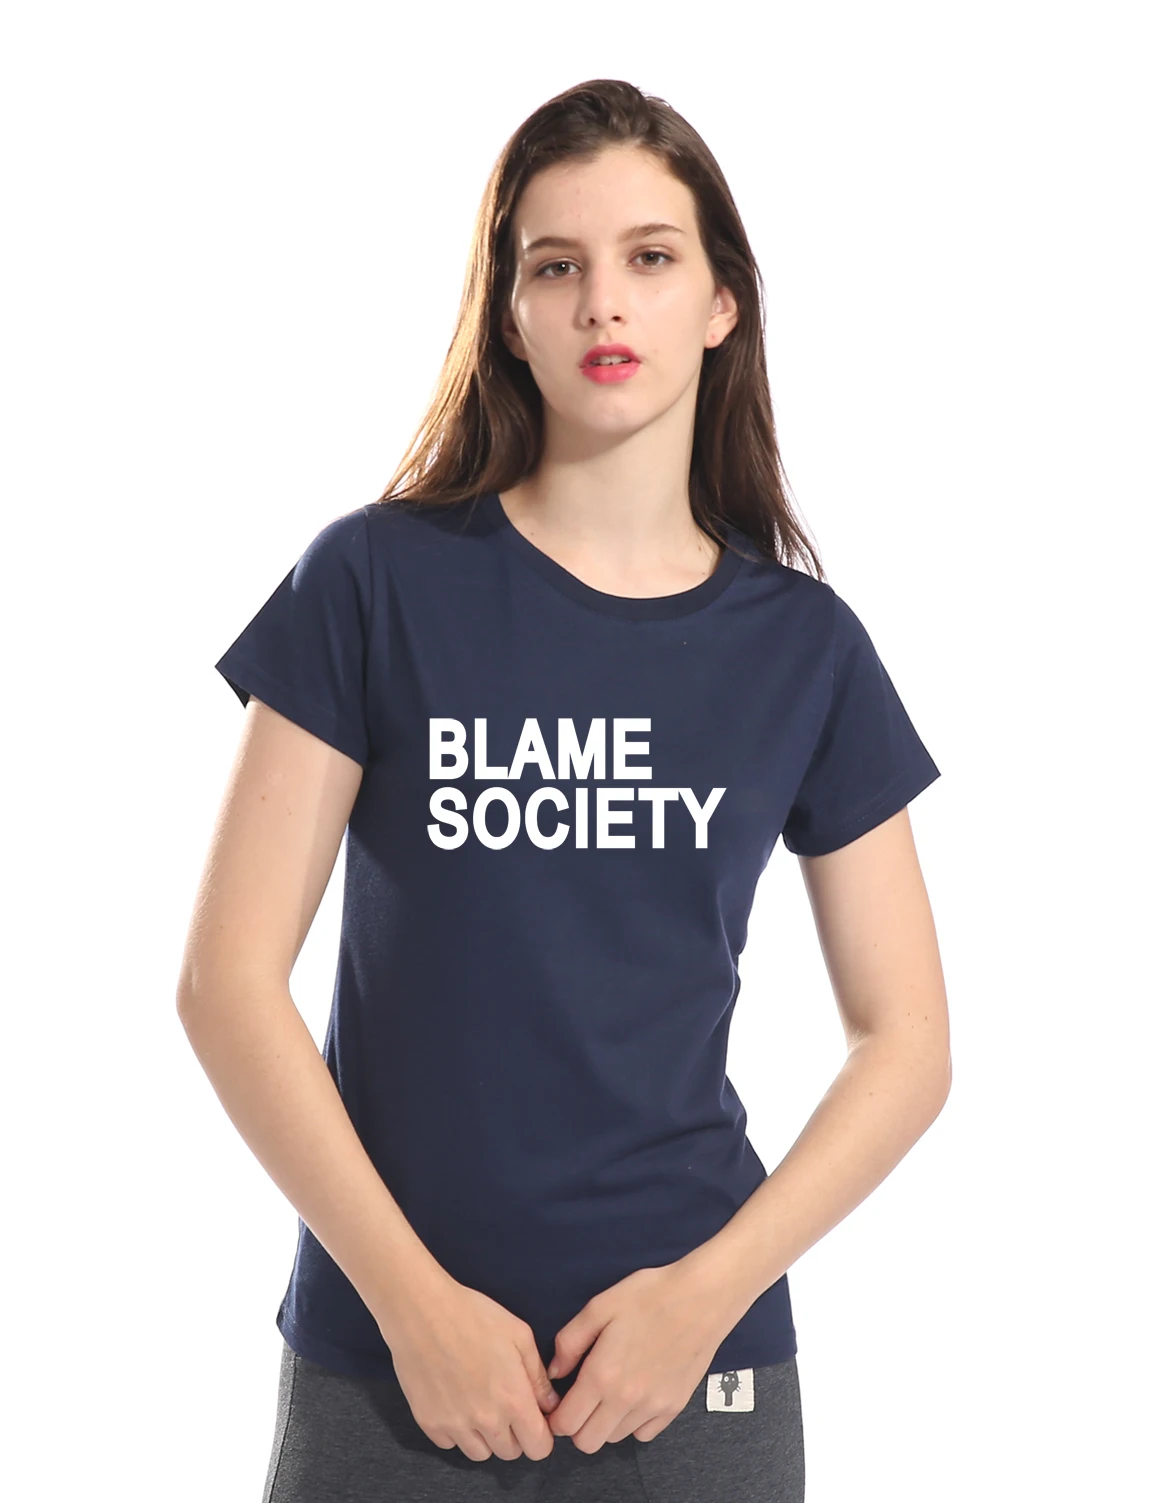 Blame society персональная футболка Женская Хип-Хоп Уличная 2019 лето новый стиль хлопок высокое качество Приталенная футболка женская